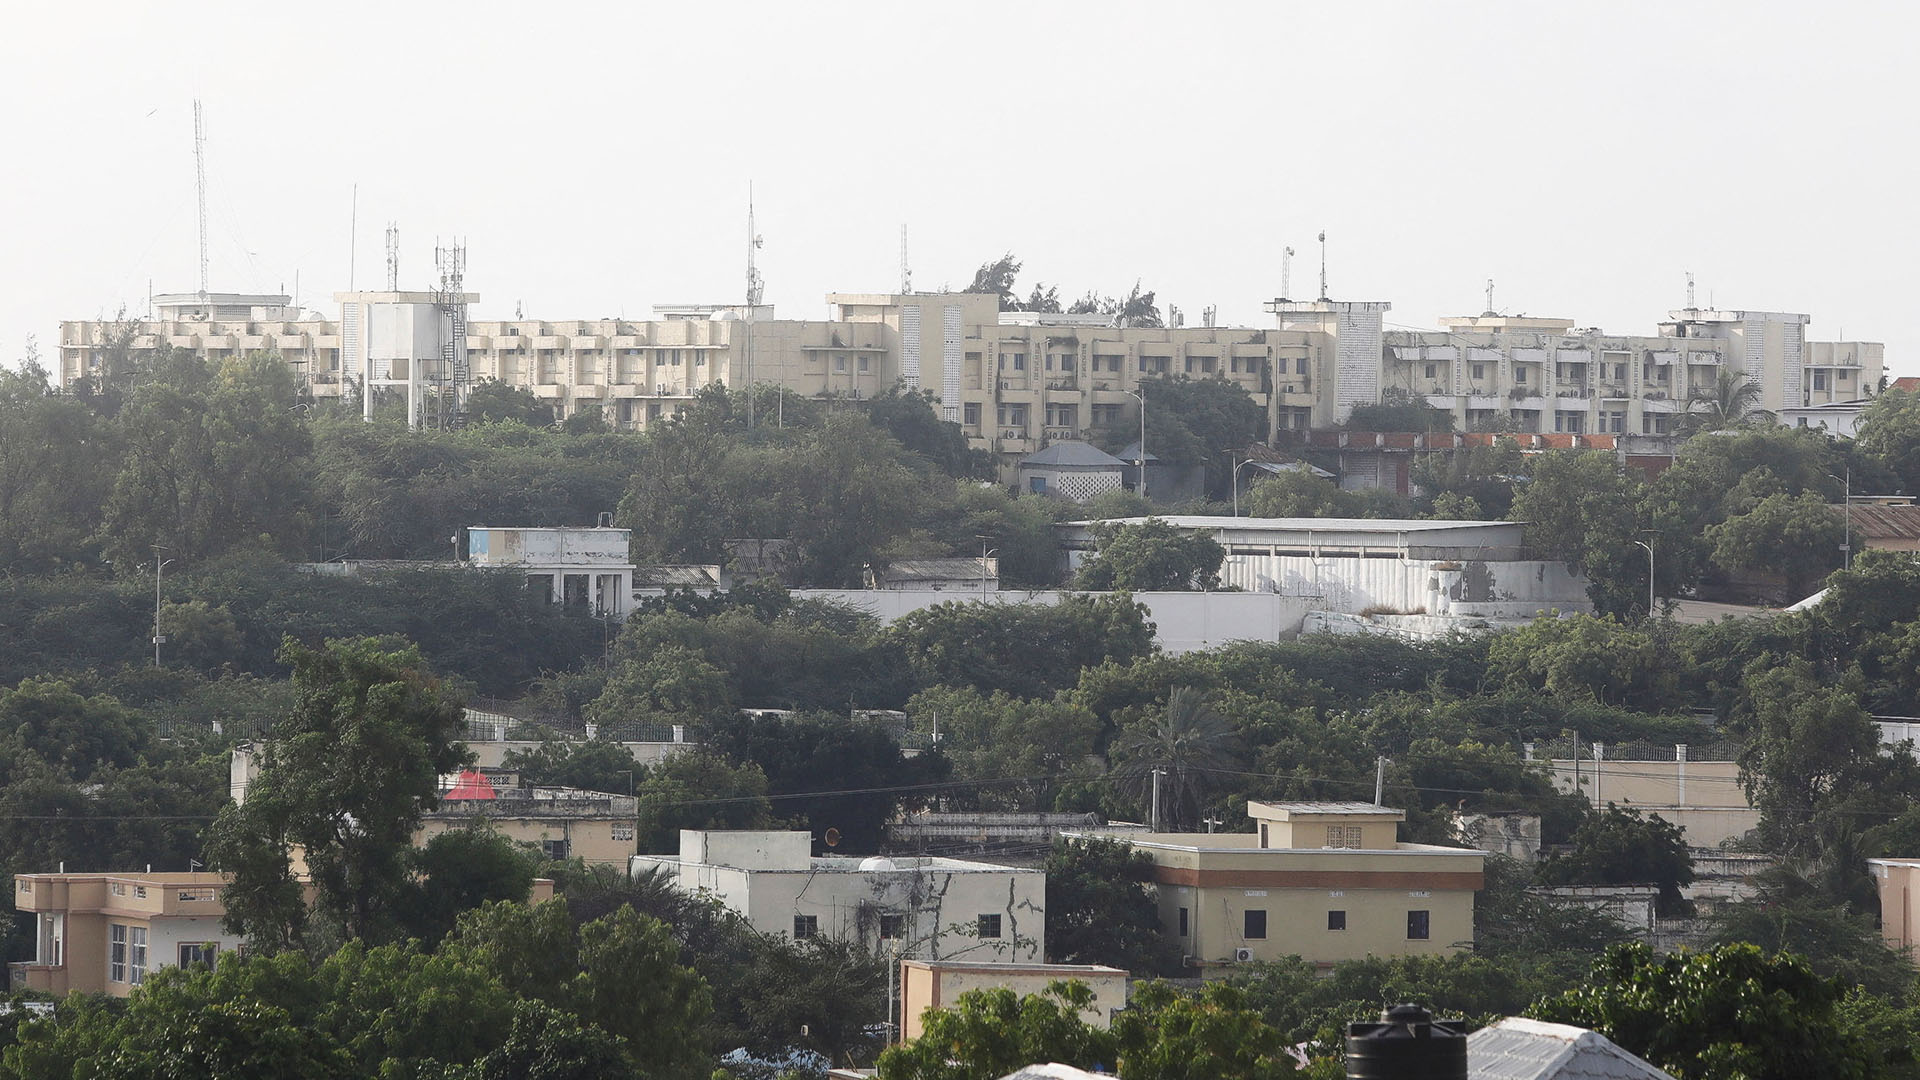 Die Ansicht zeigt einen Teil des Präsidentenpalastes in Mogadischu (Somalia). | REUTERS